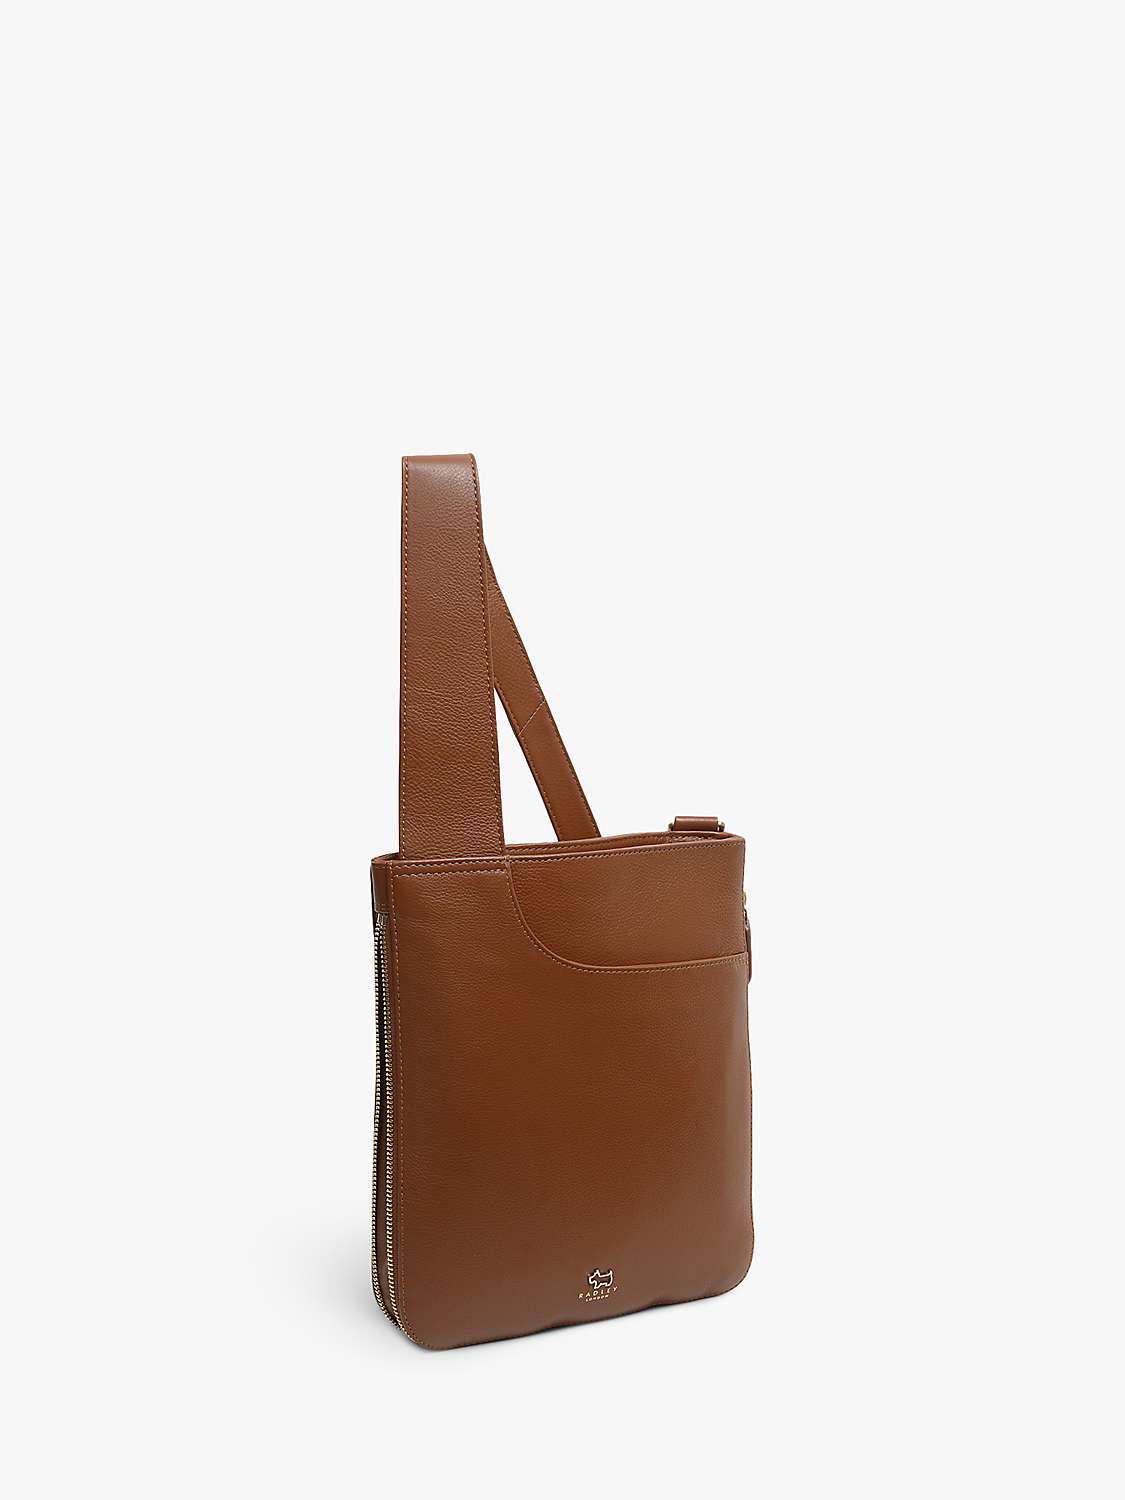 Buy Radley Pocket Bag Leather Medium Cross Body Bag Online at johnlewis.com